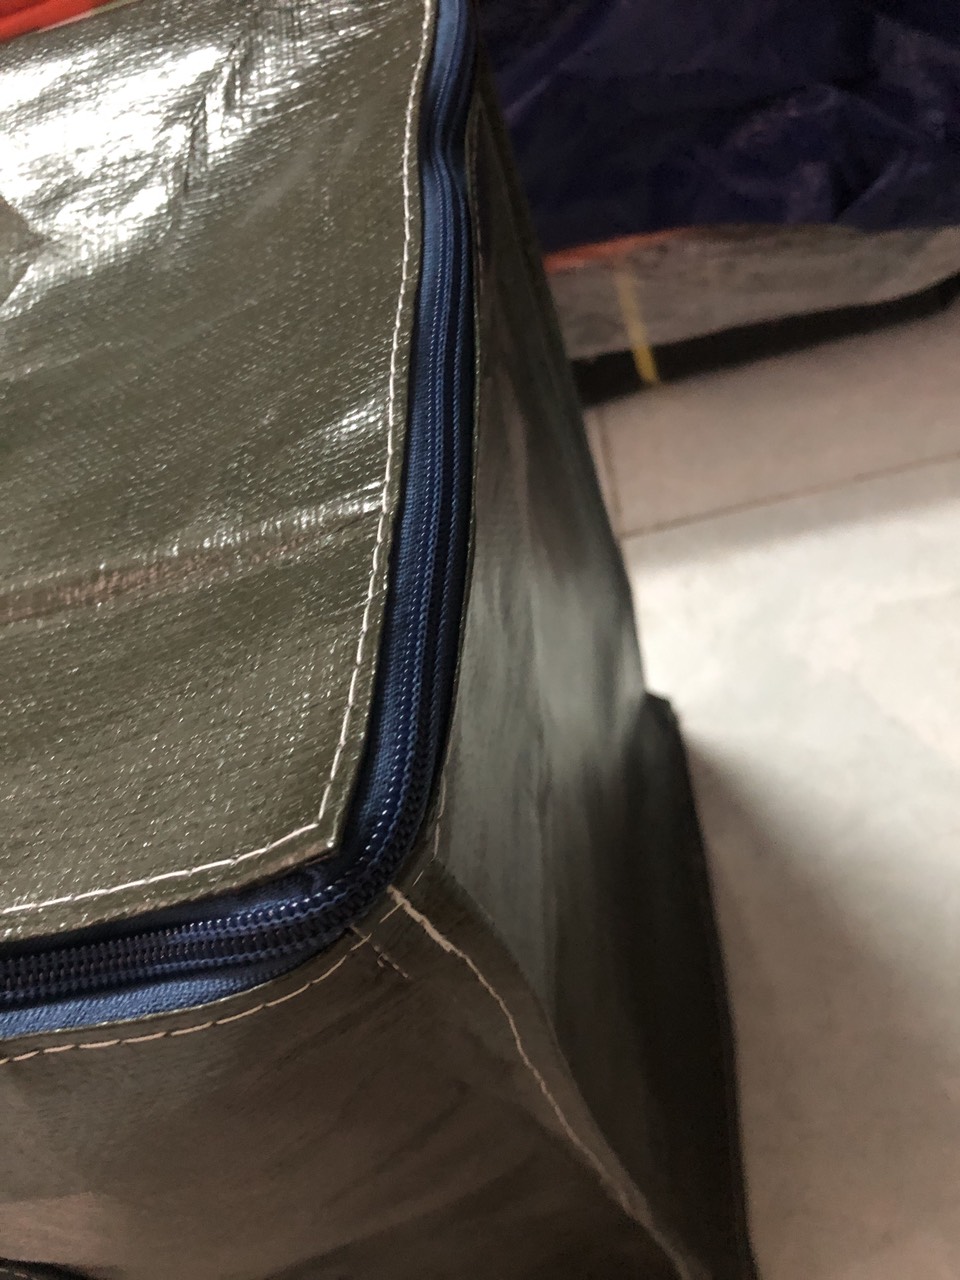 Túi bạc đựng đồ loại dày -  Màu Xanh Rêu Tím đựng đồ đc tới 60kg